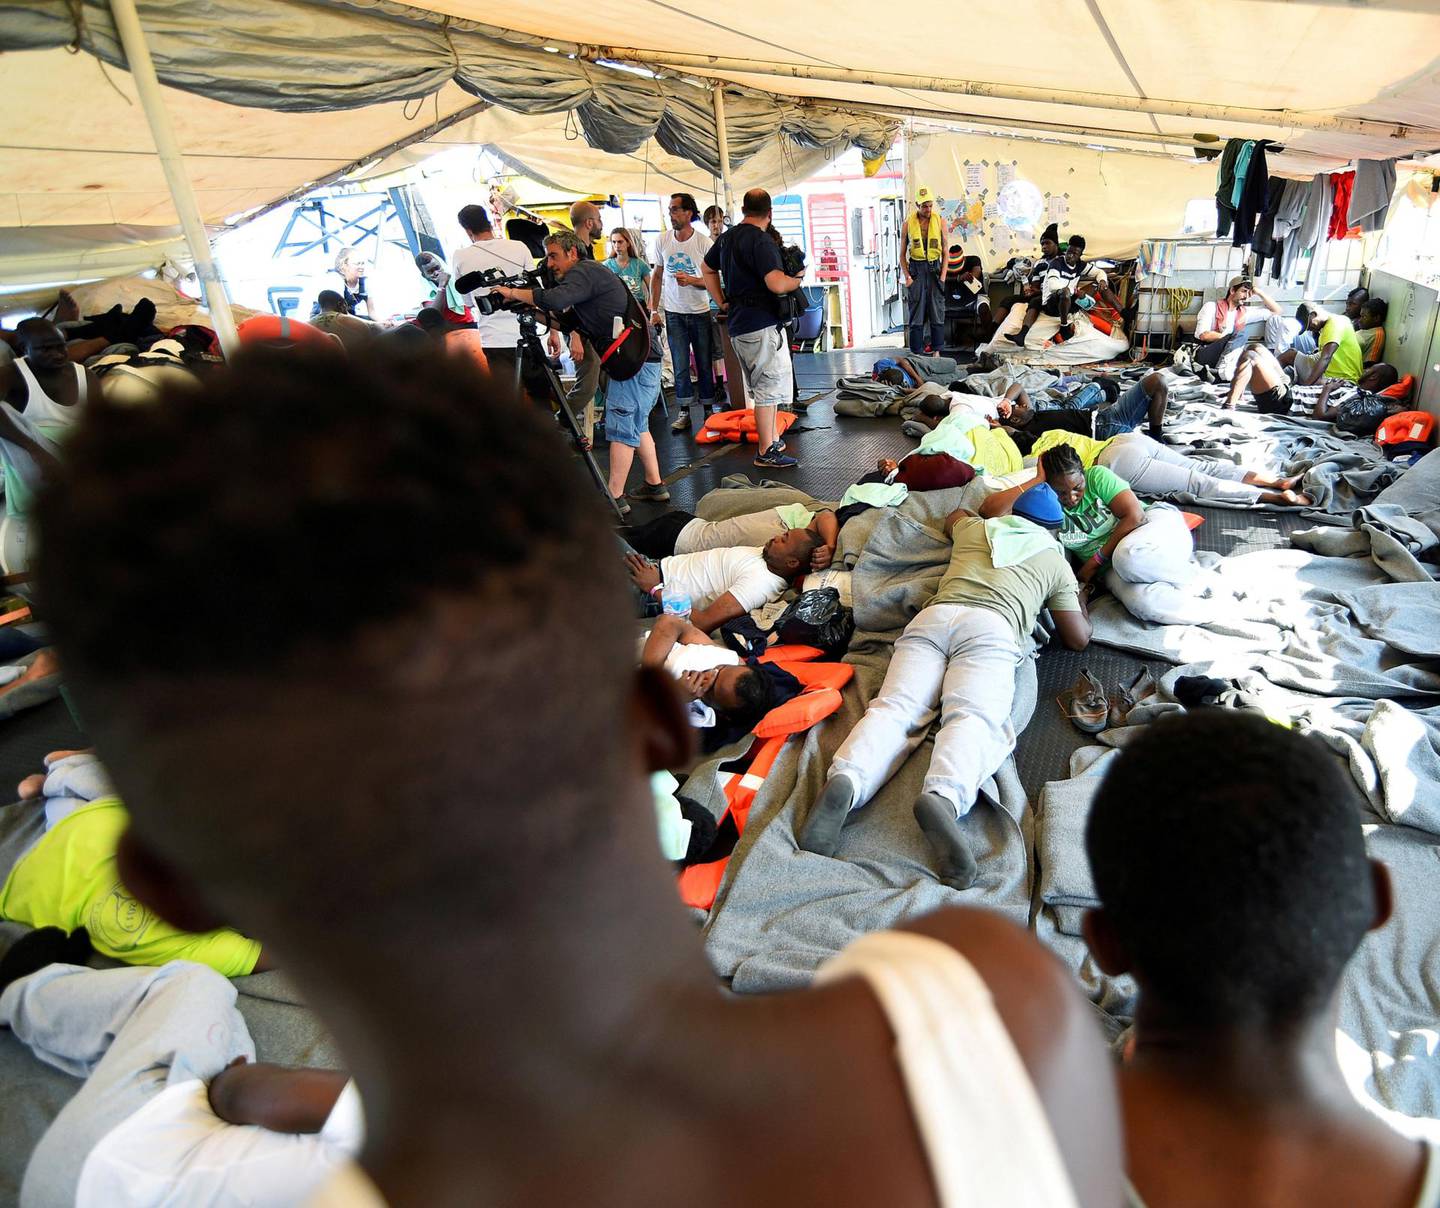 Skipet Carola Rackete førte hadde 53 flyktninger om bord, som var plukket opp fra Middelhavet. FOTO: GUGLIELMO MANGIAPANE/REUTERS/NTB SCANPIX